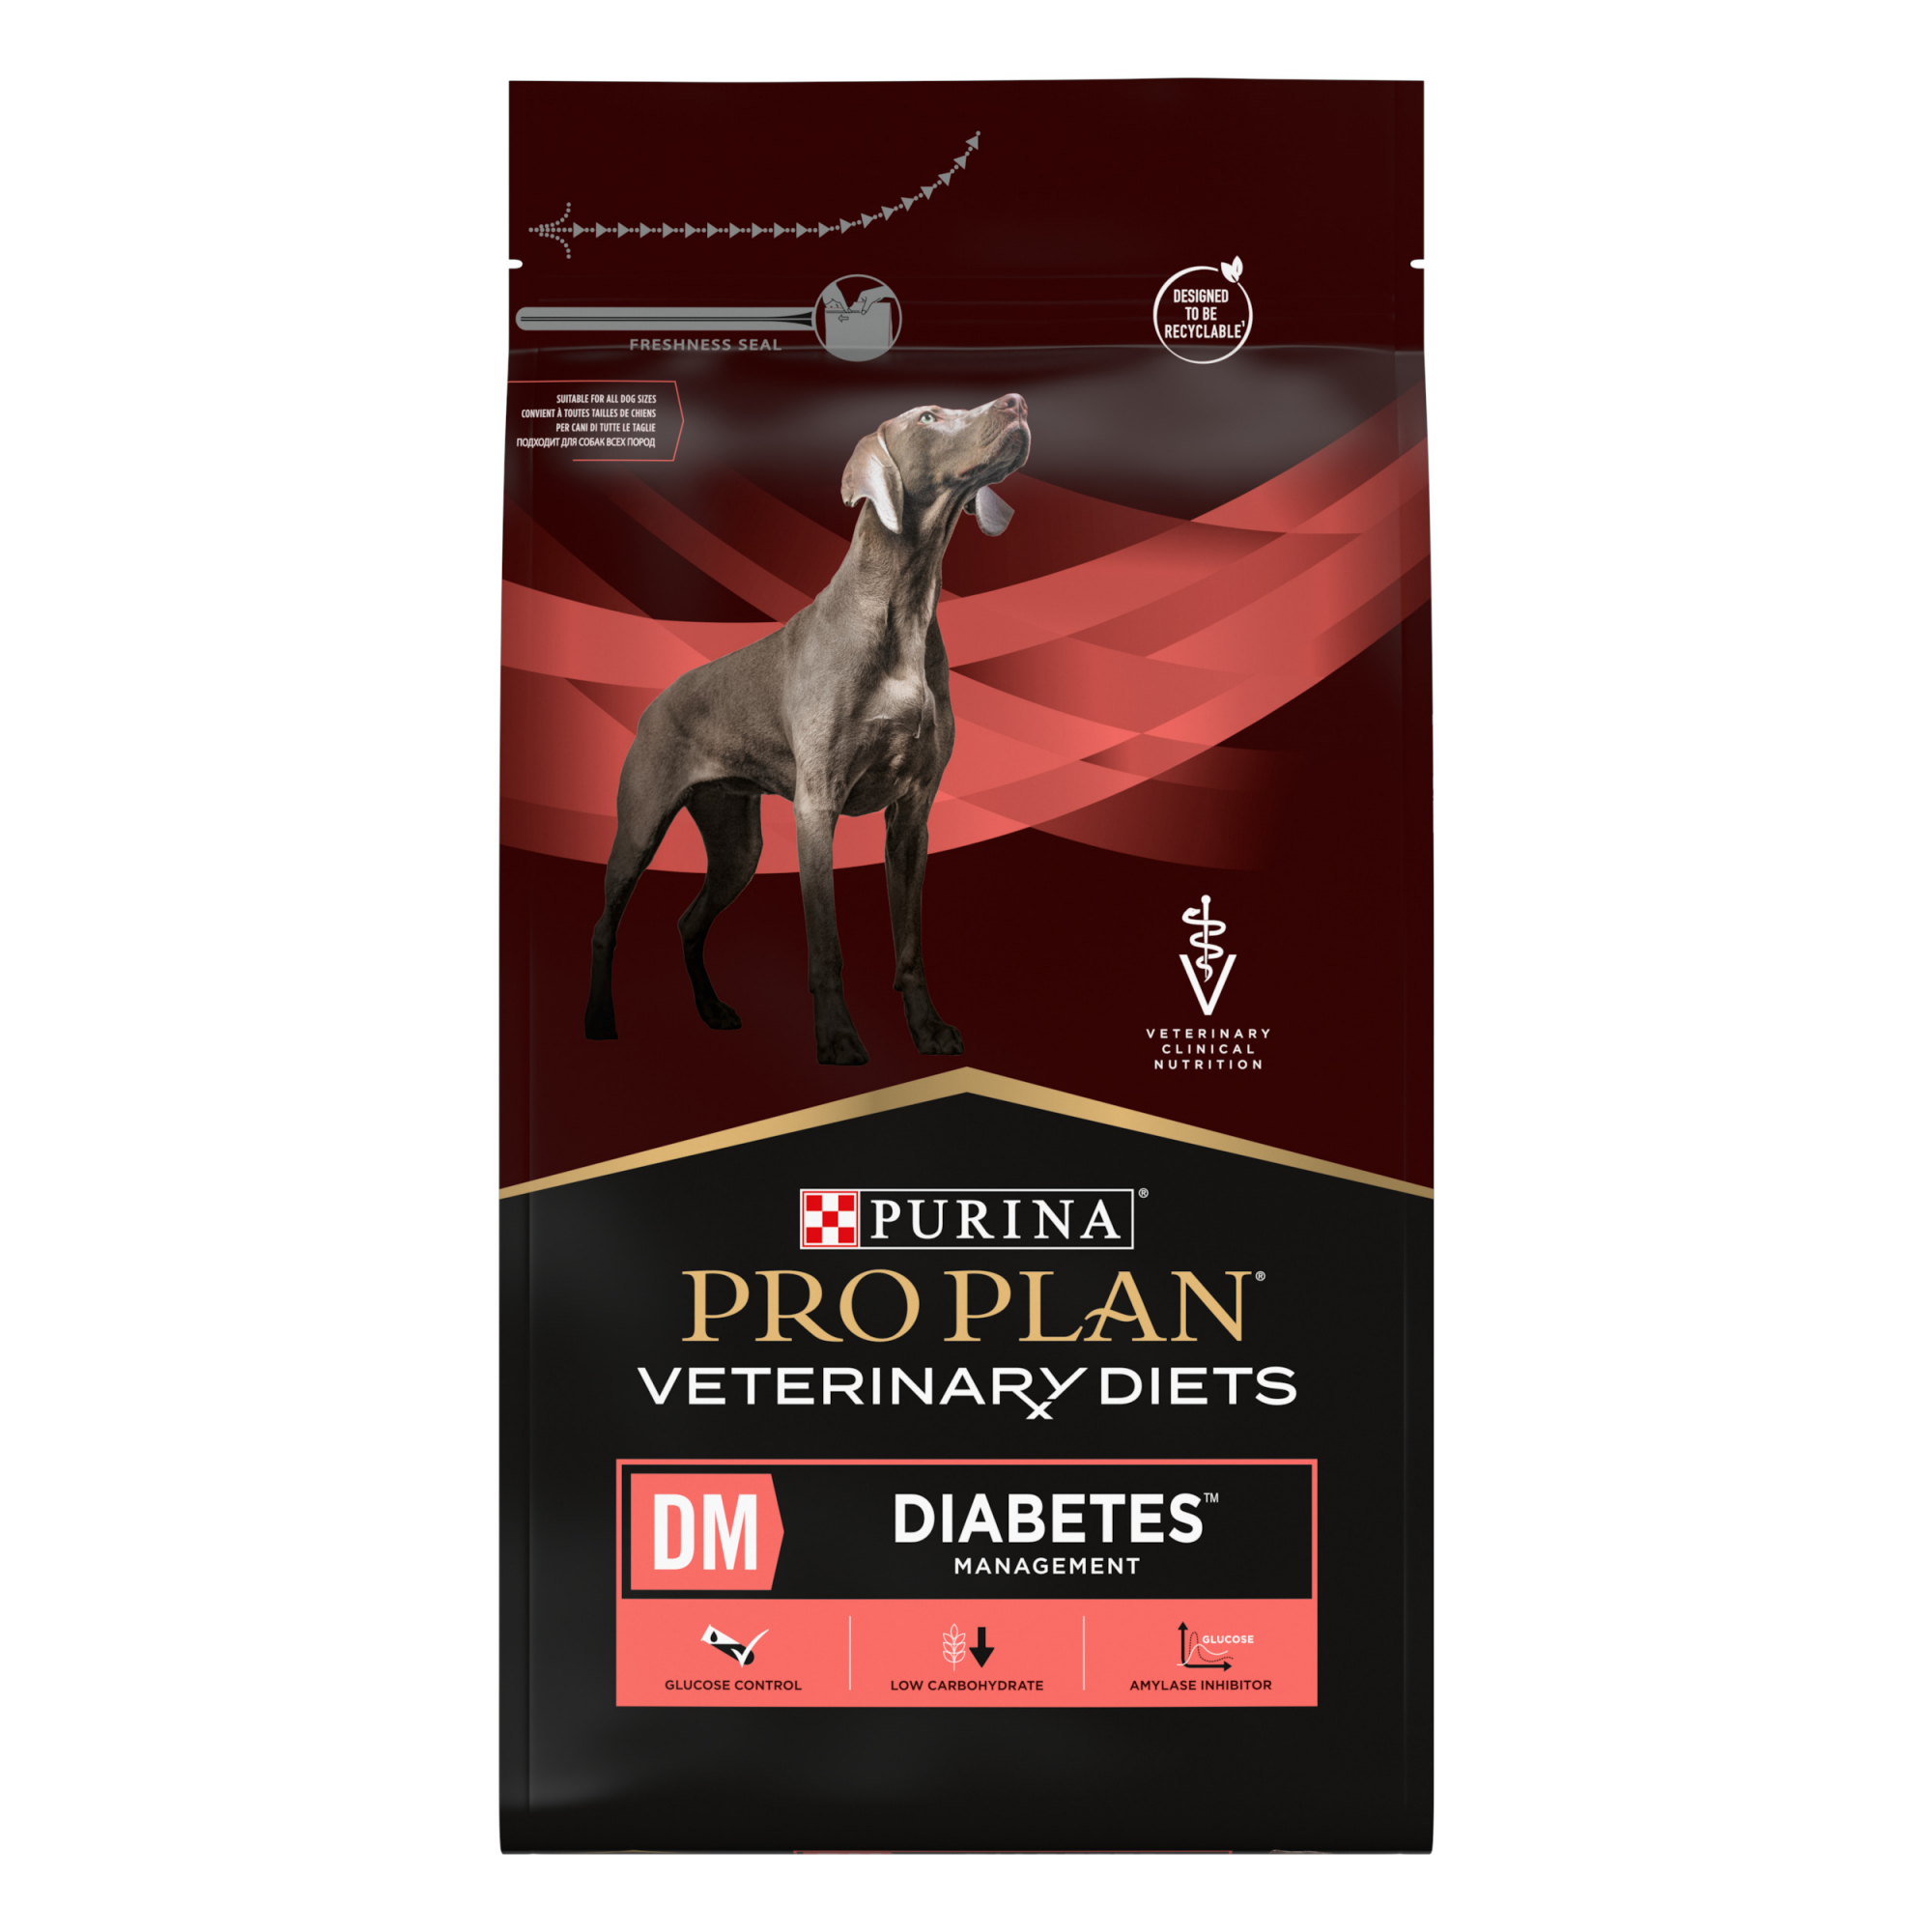 Pro Plan Veterinary Diets DM Diabetes Management